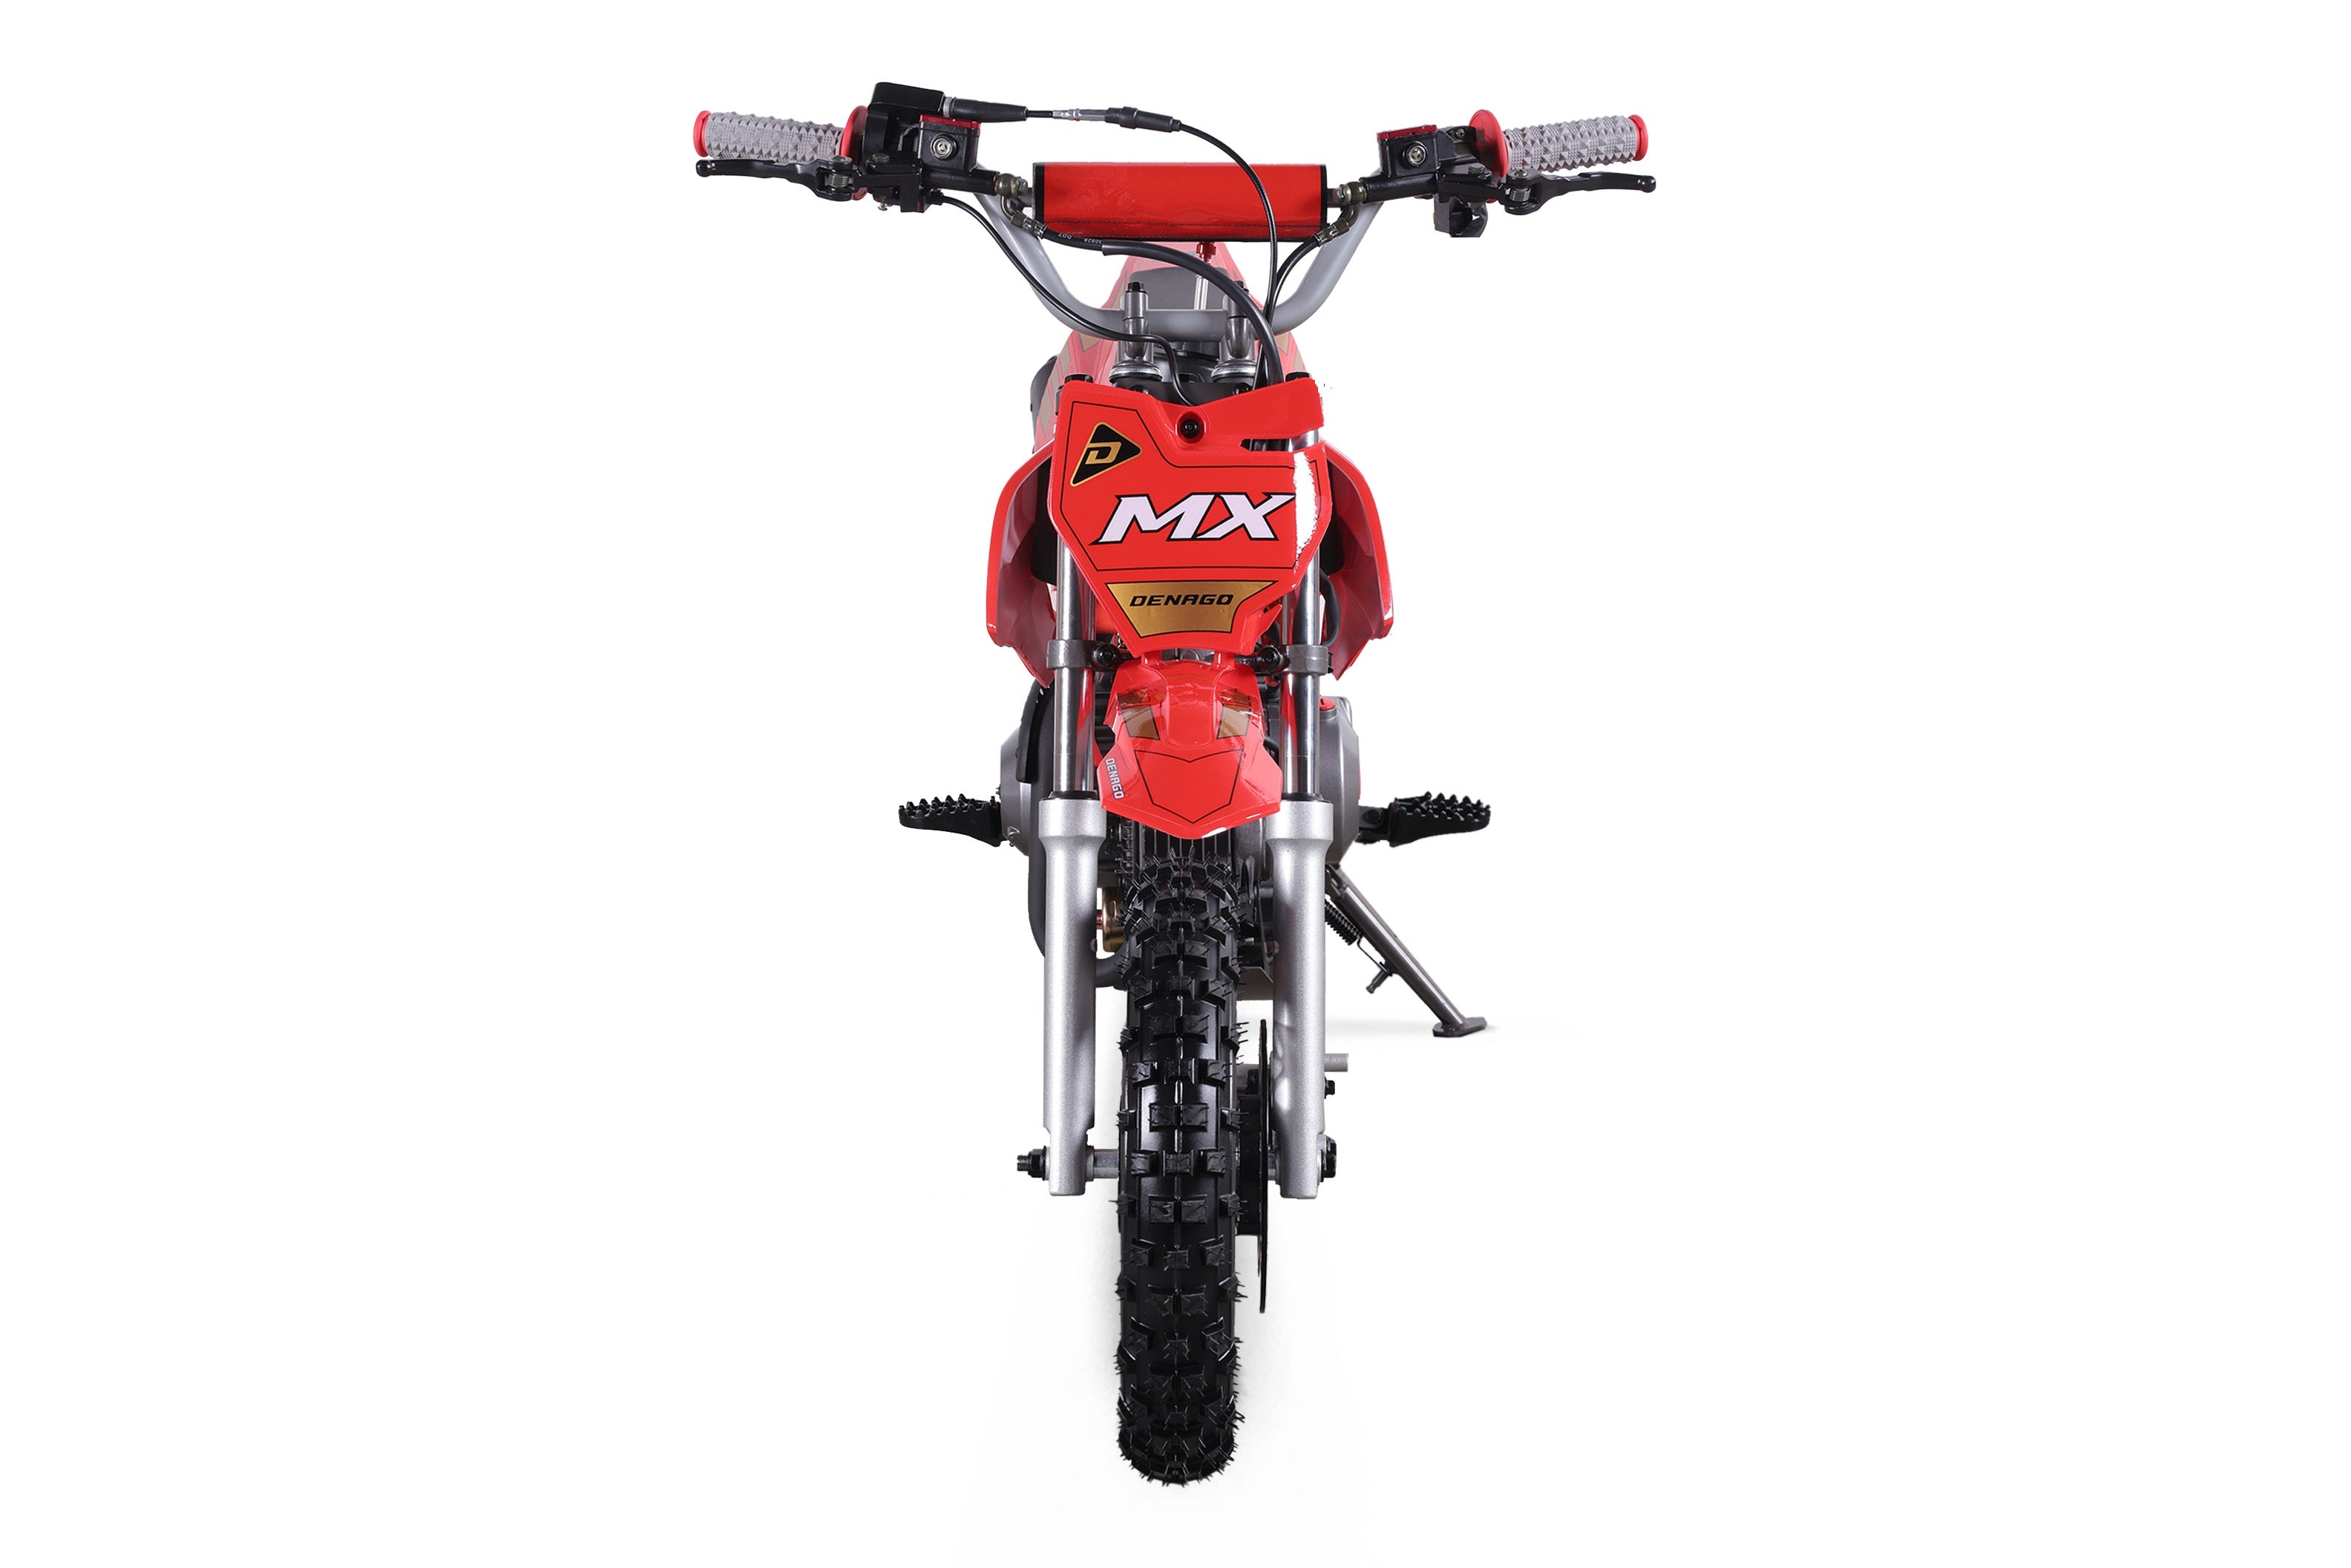 MX Dirt Bike